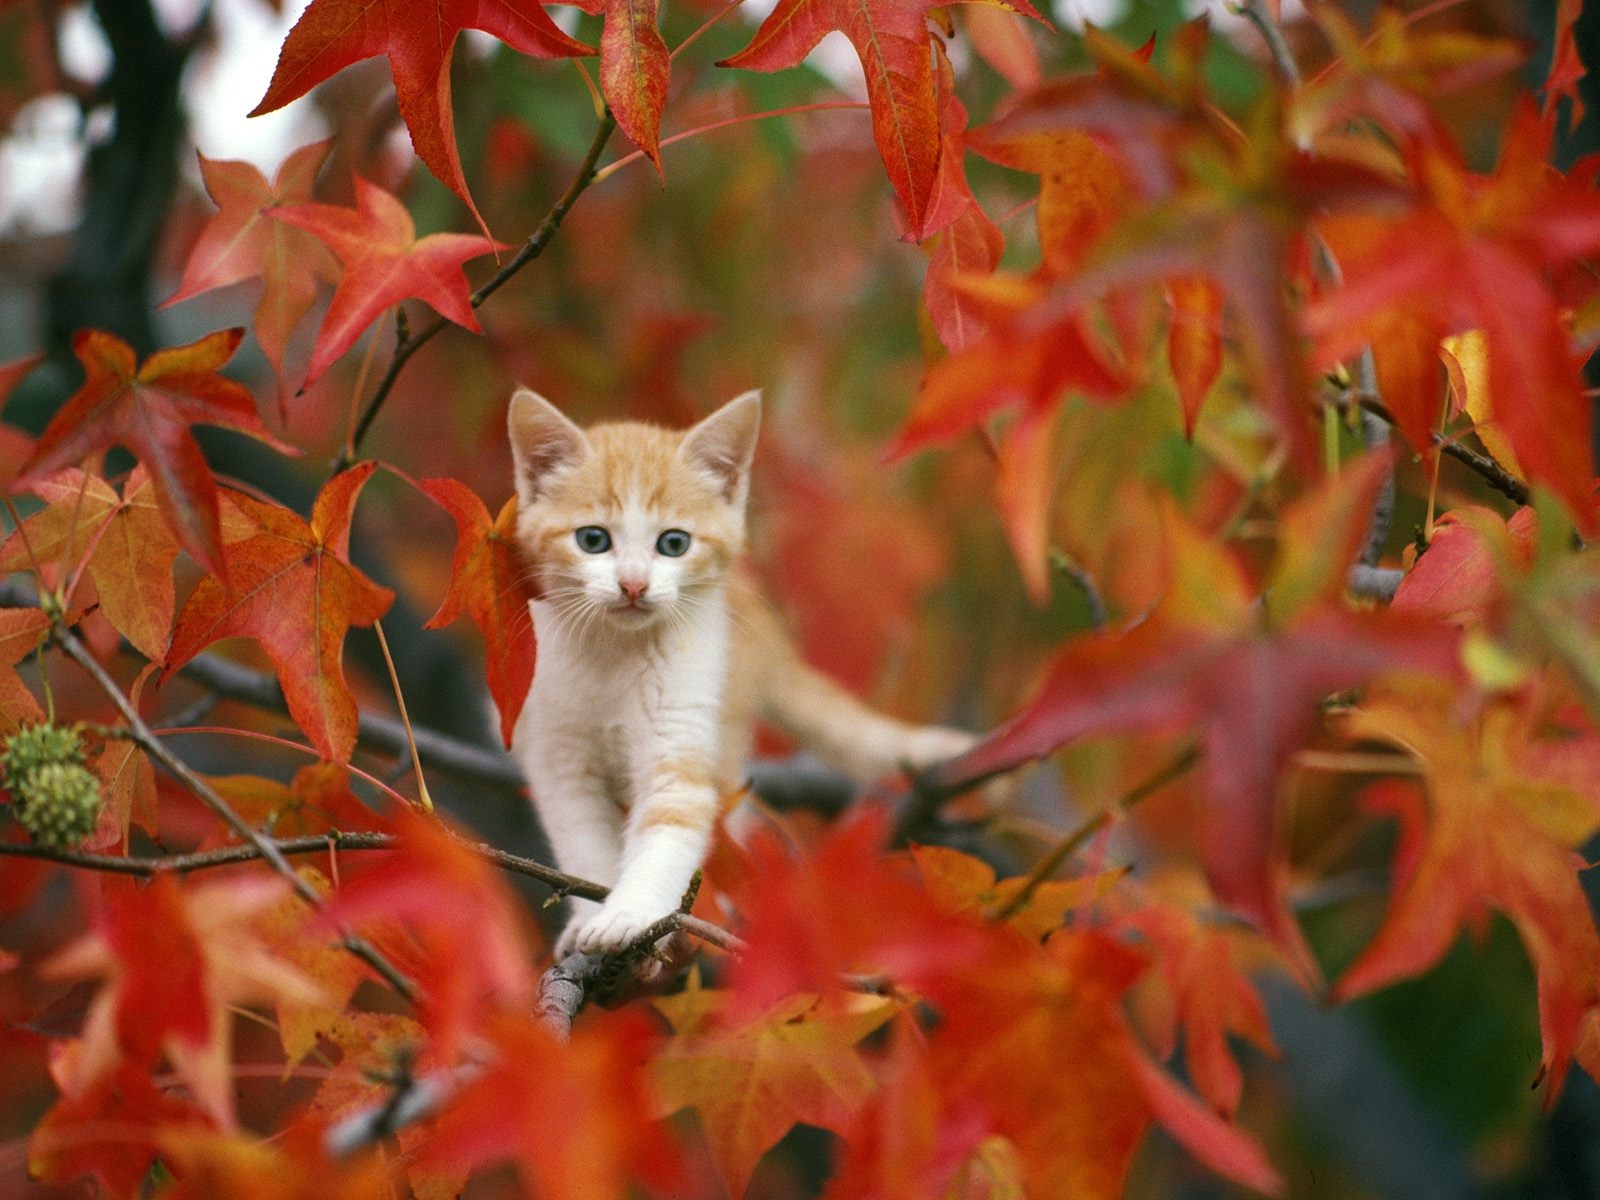 Lindo outono: o gatinho nas folhas